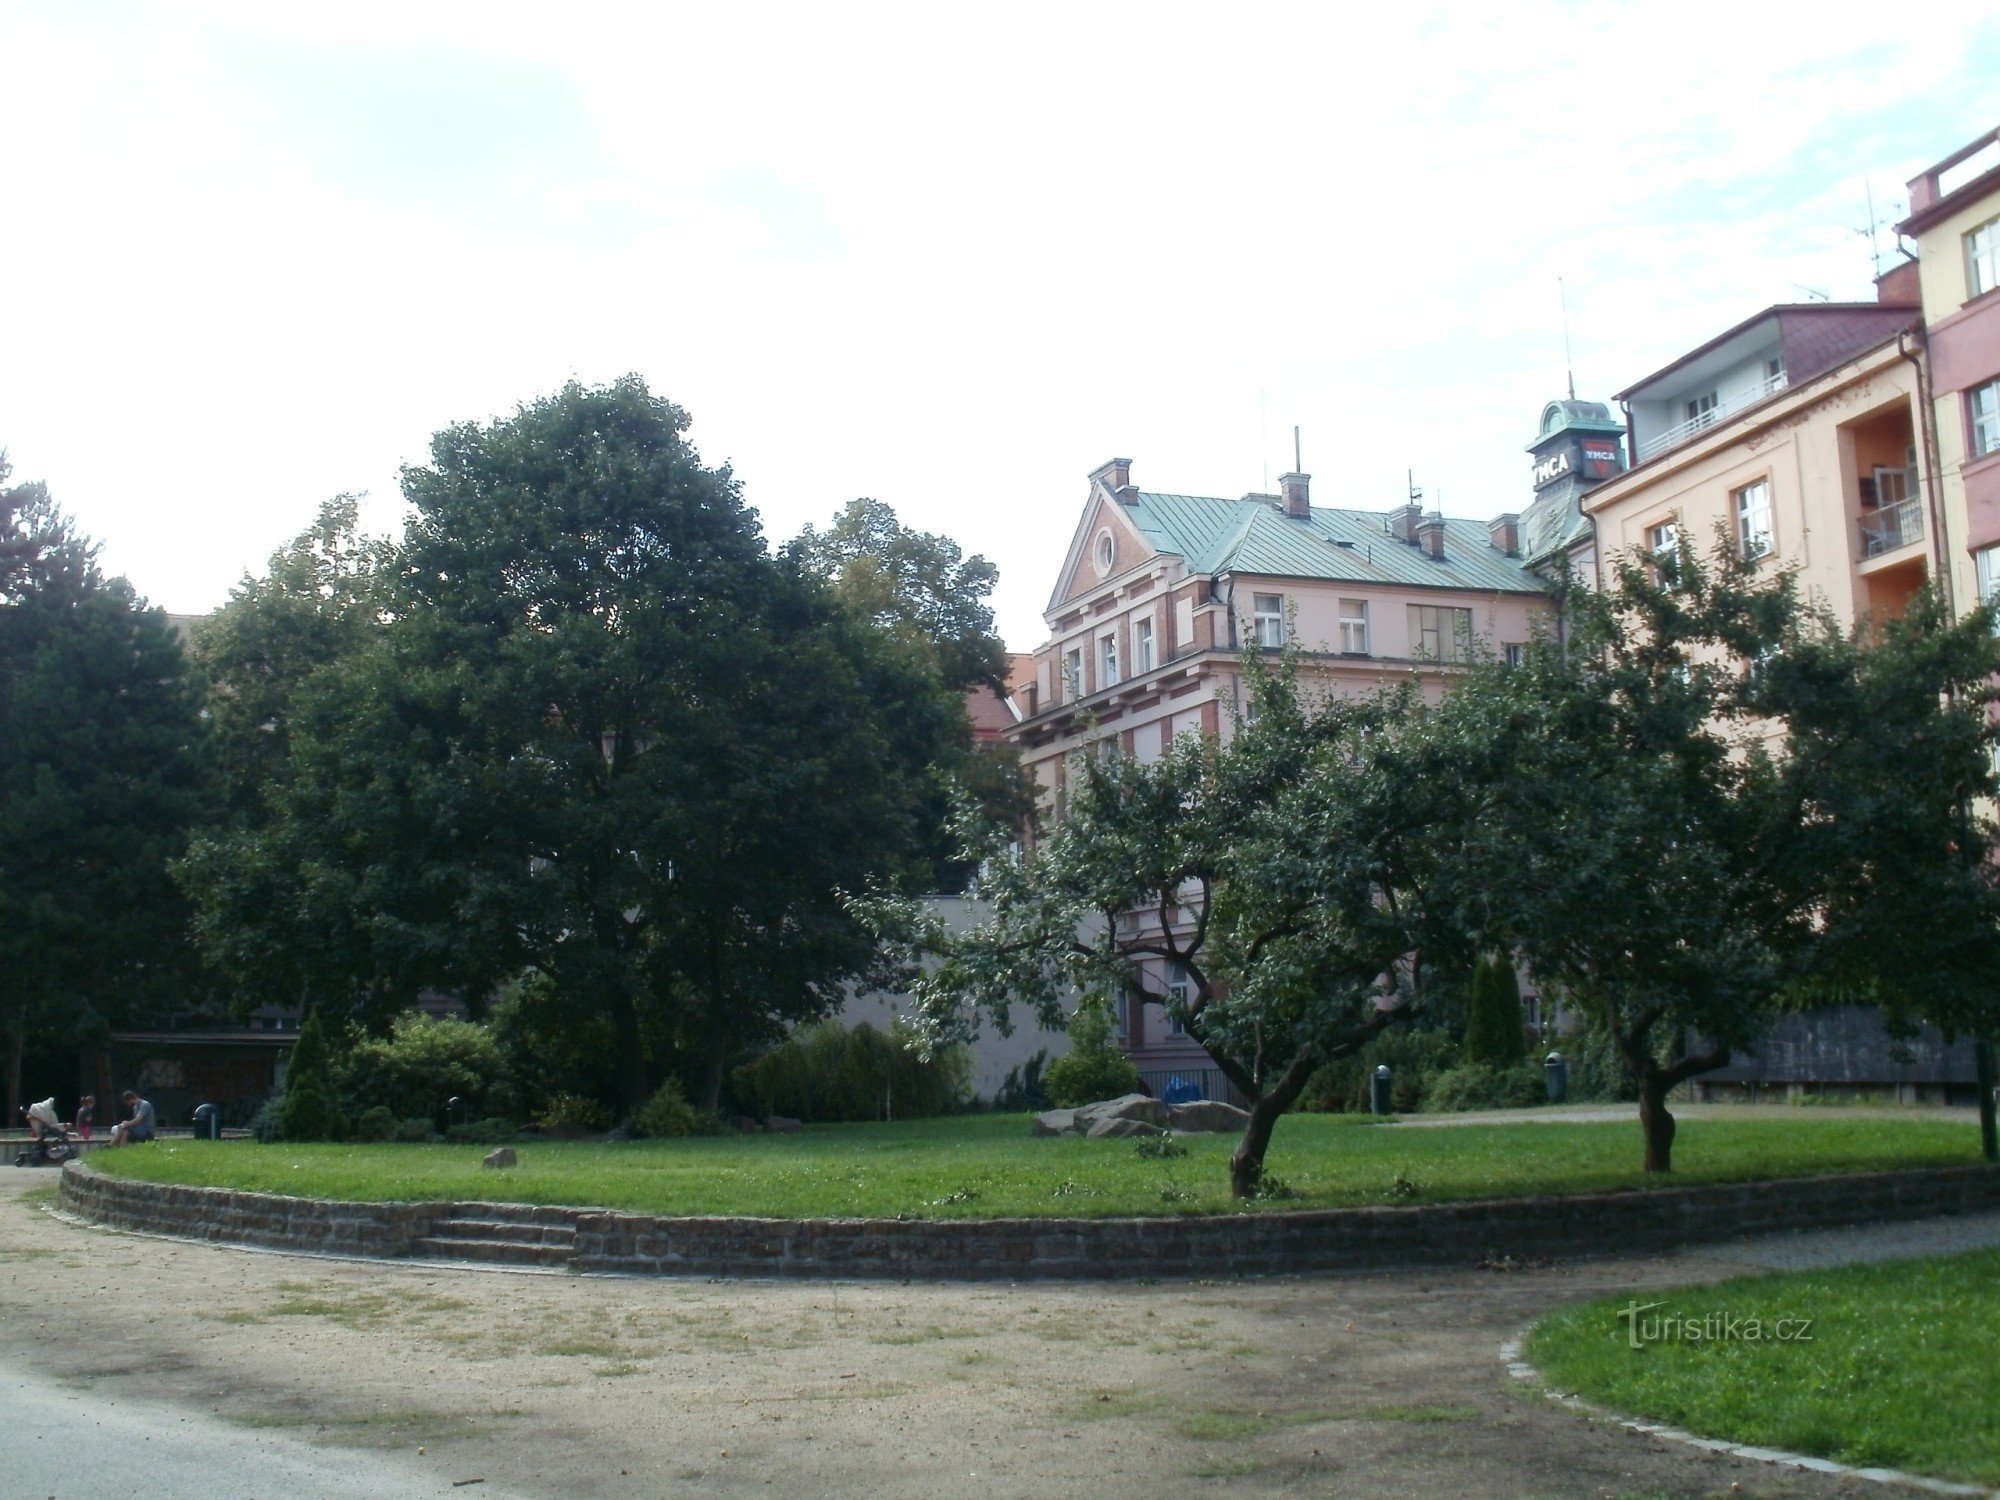 Hradec Králové - parc de conte de fées